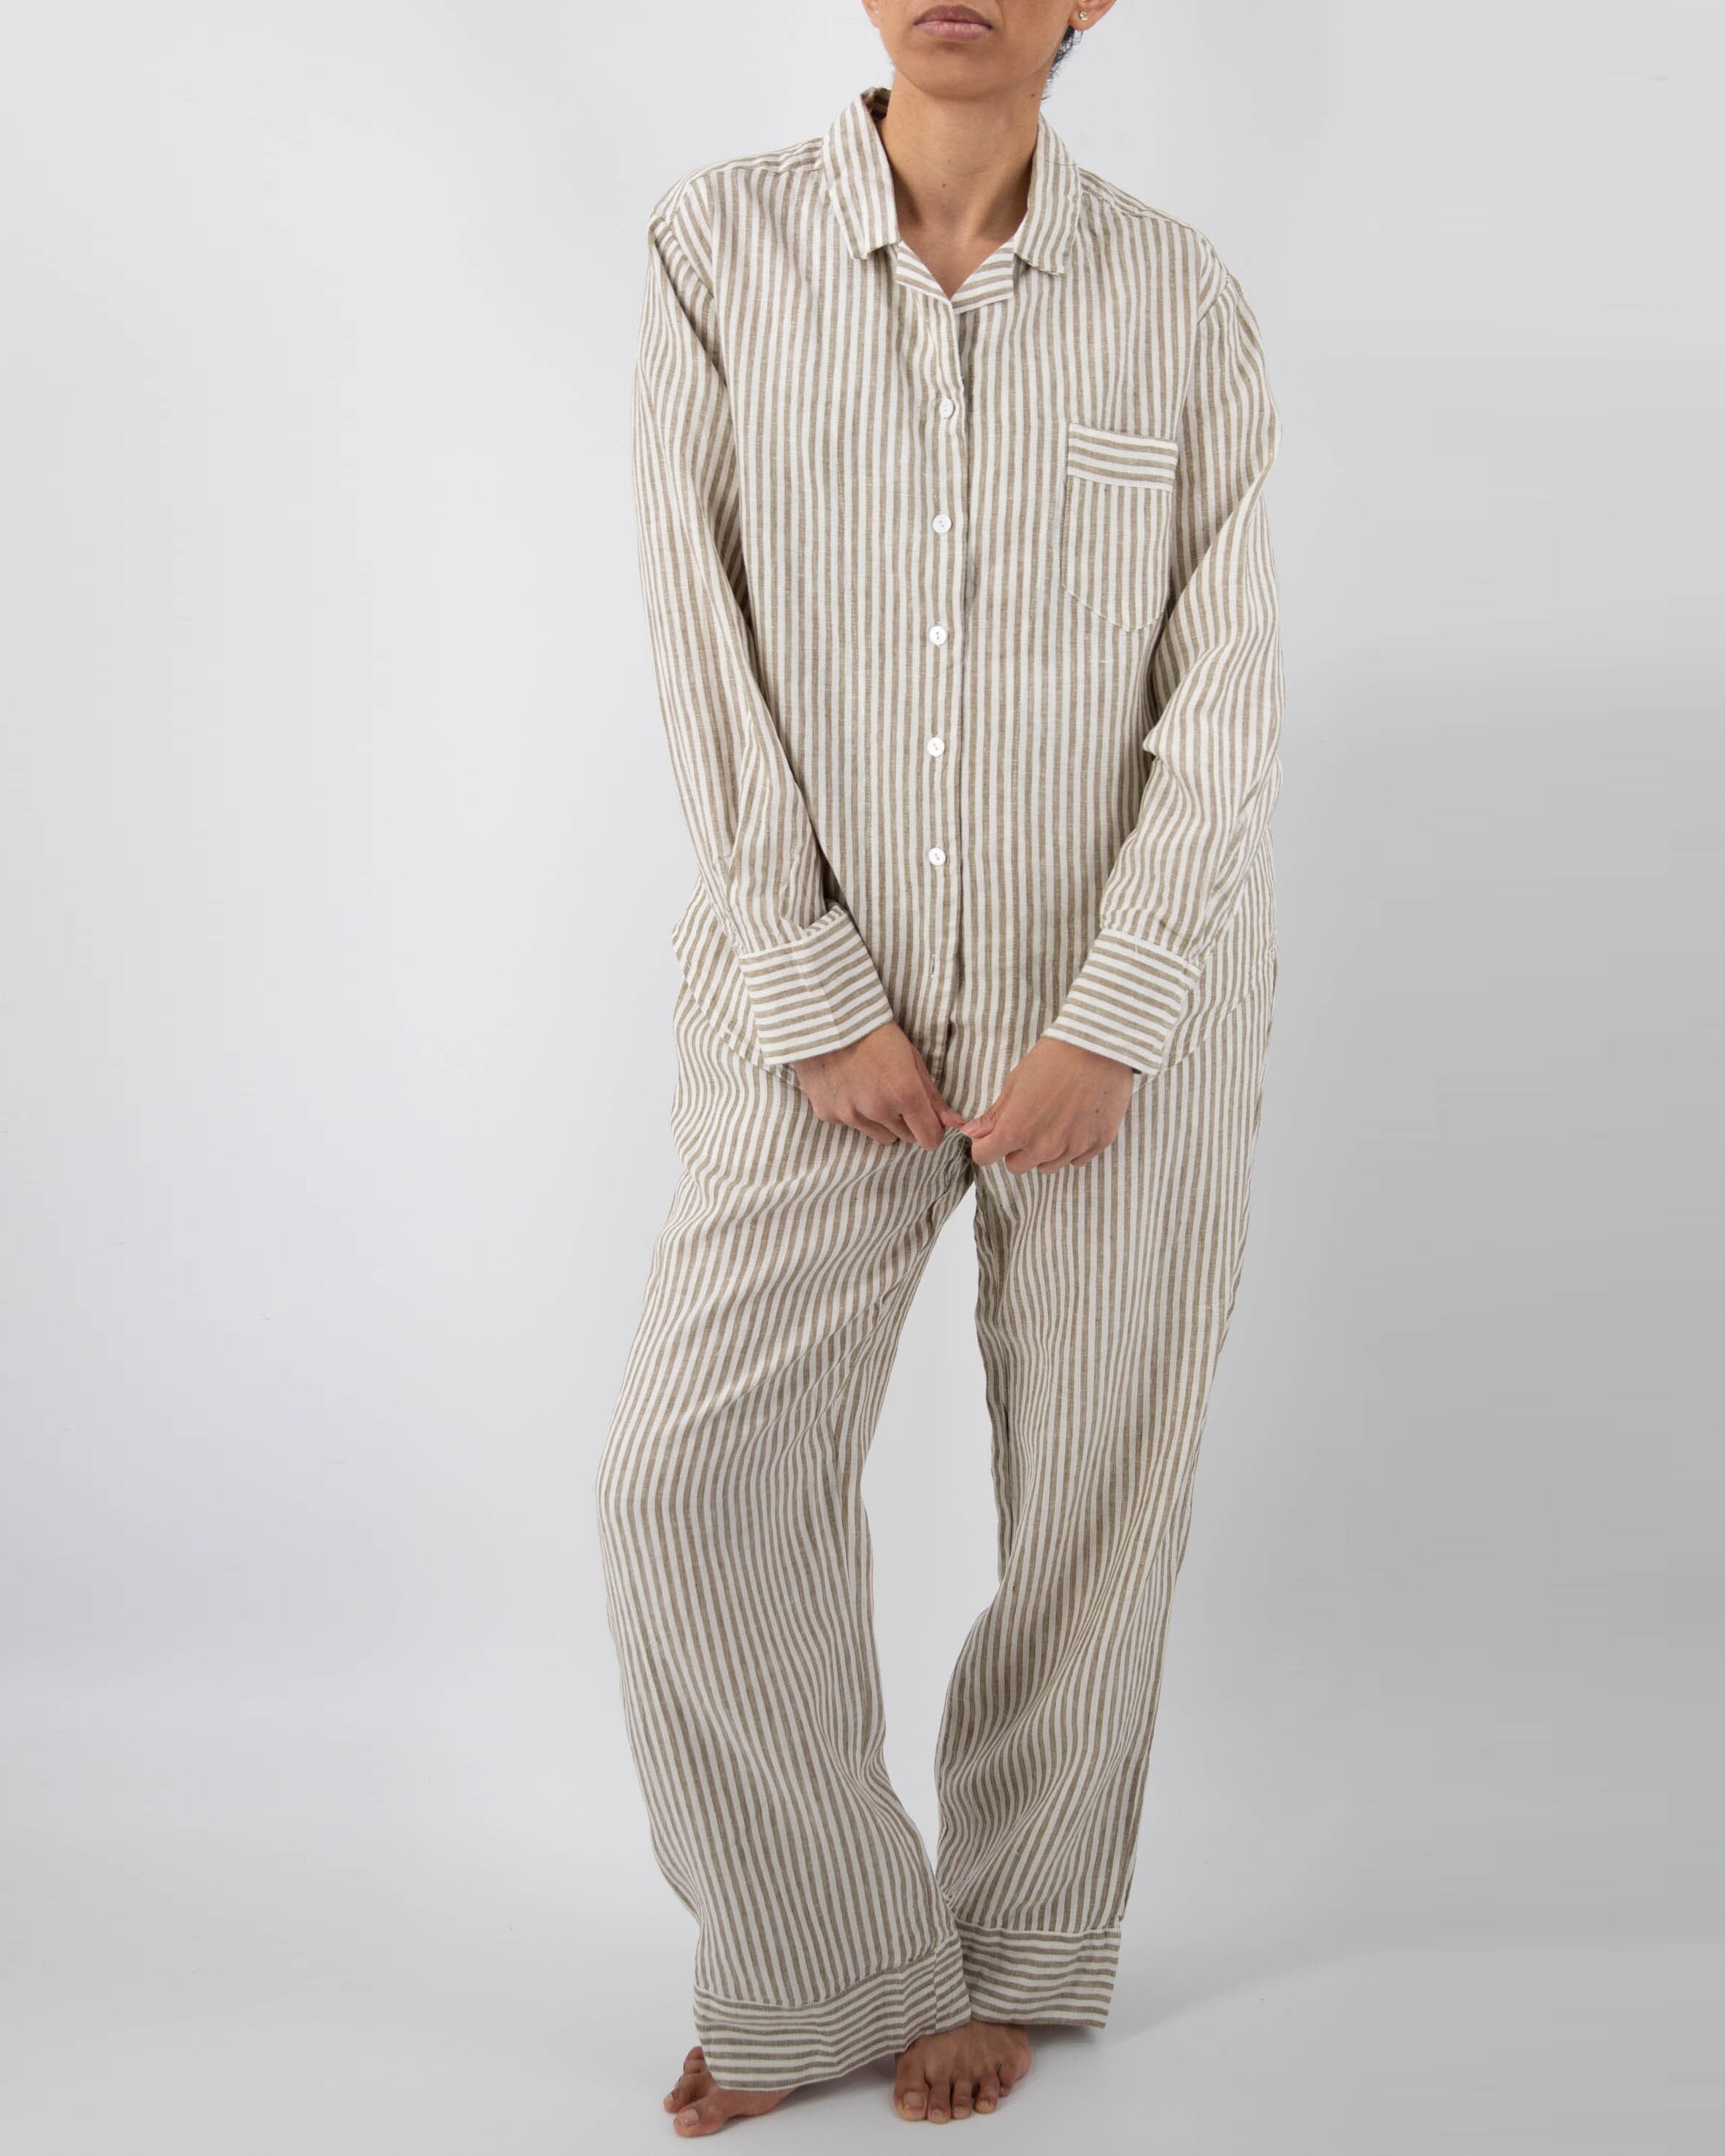 Kleding Herenkleding Pyjamas & Badjassen Sets LINNEN pyjama voor heren eenvoudig shirt met korte mouwen en lange broek 